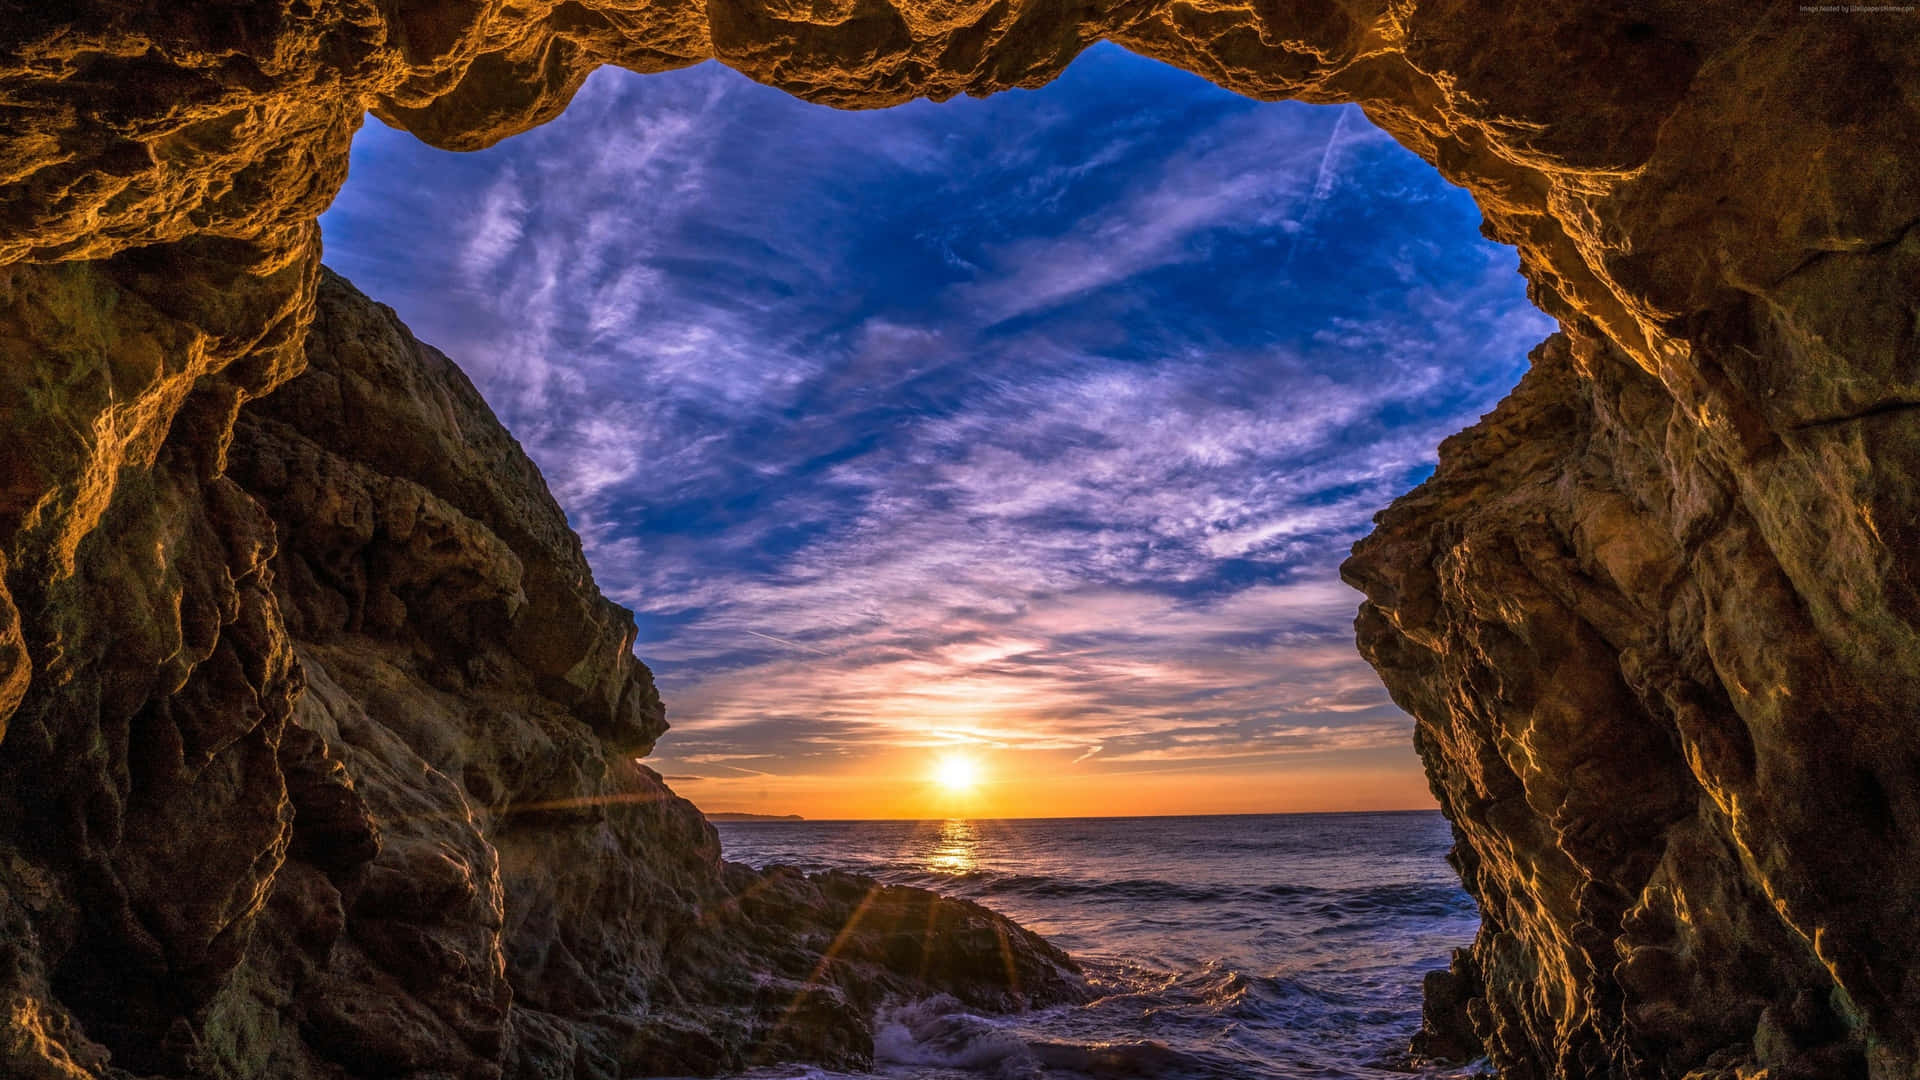 1440p Malibu Cave Opening Sunset Background